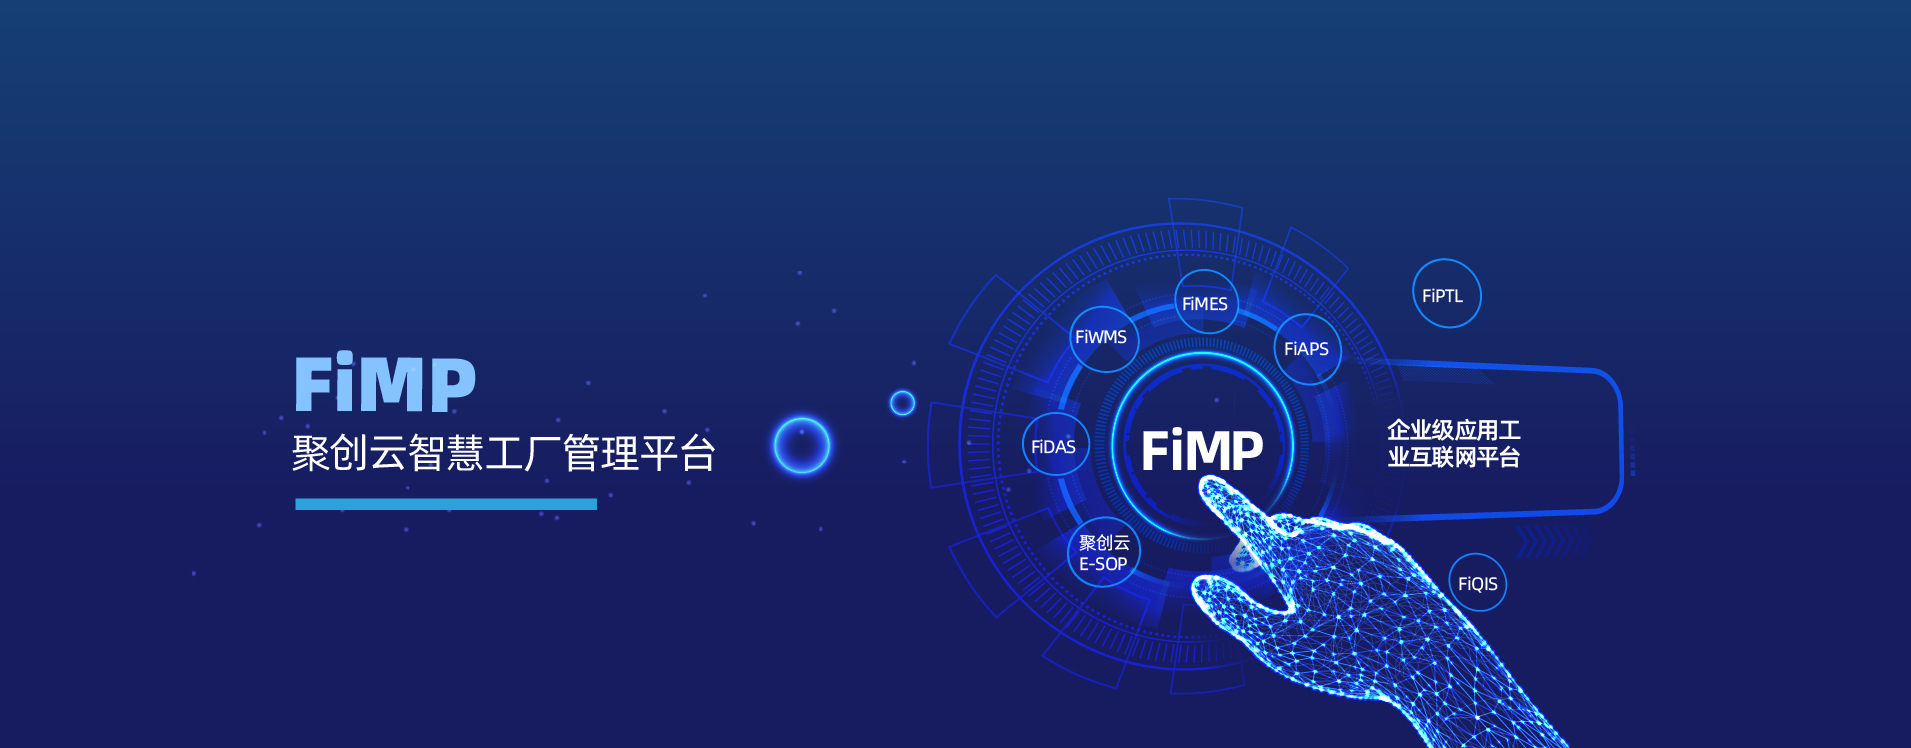 佳帆FiMP管理平臺_聚創云工業互聯網平臺_佳帆科技